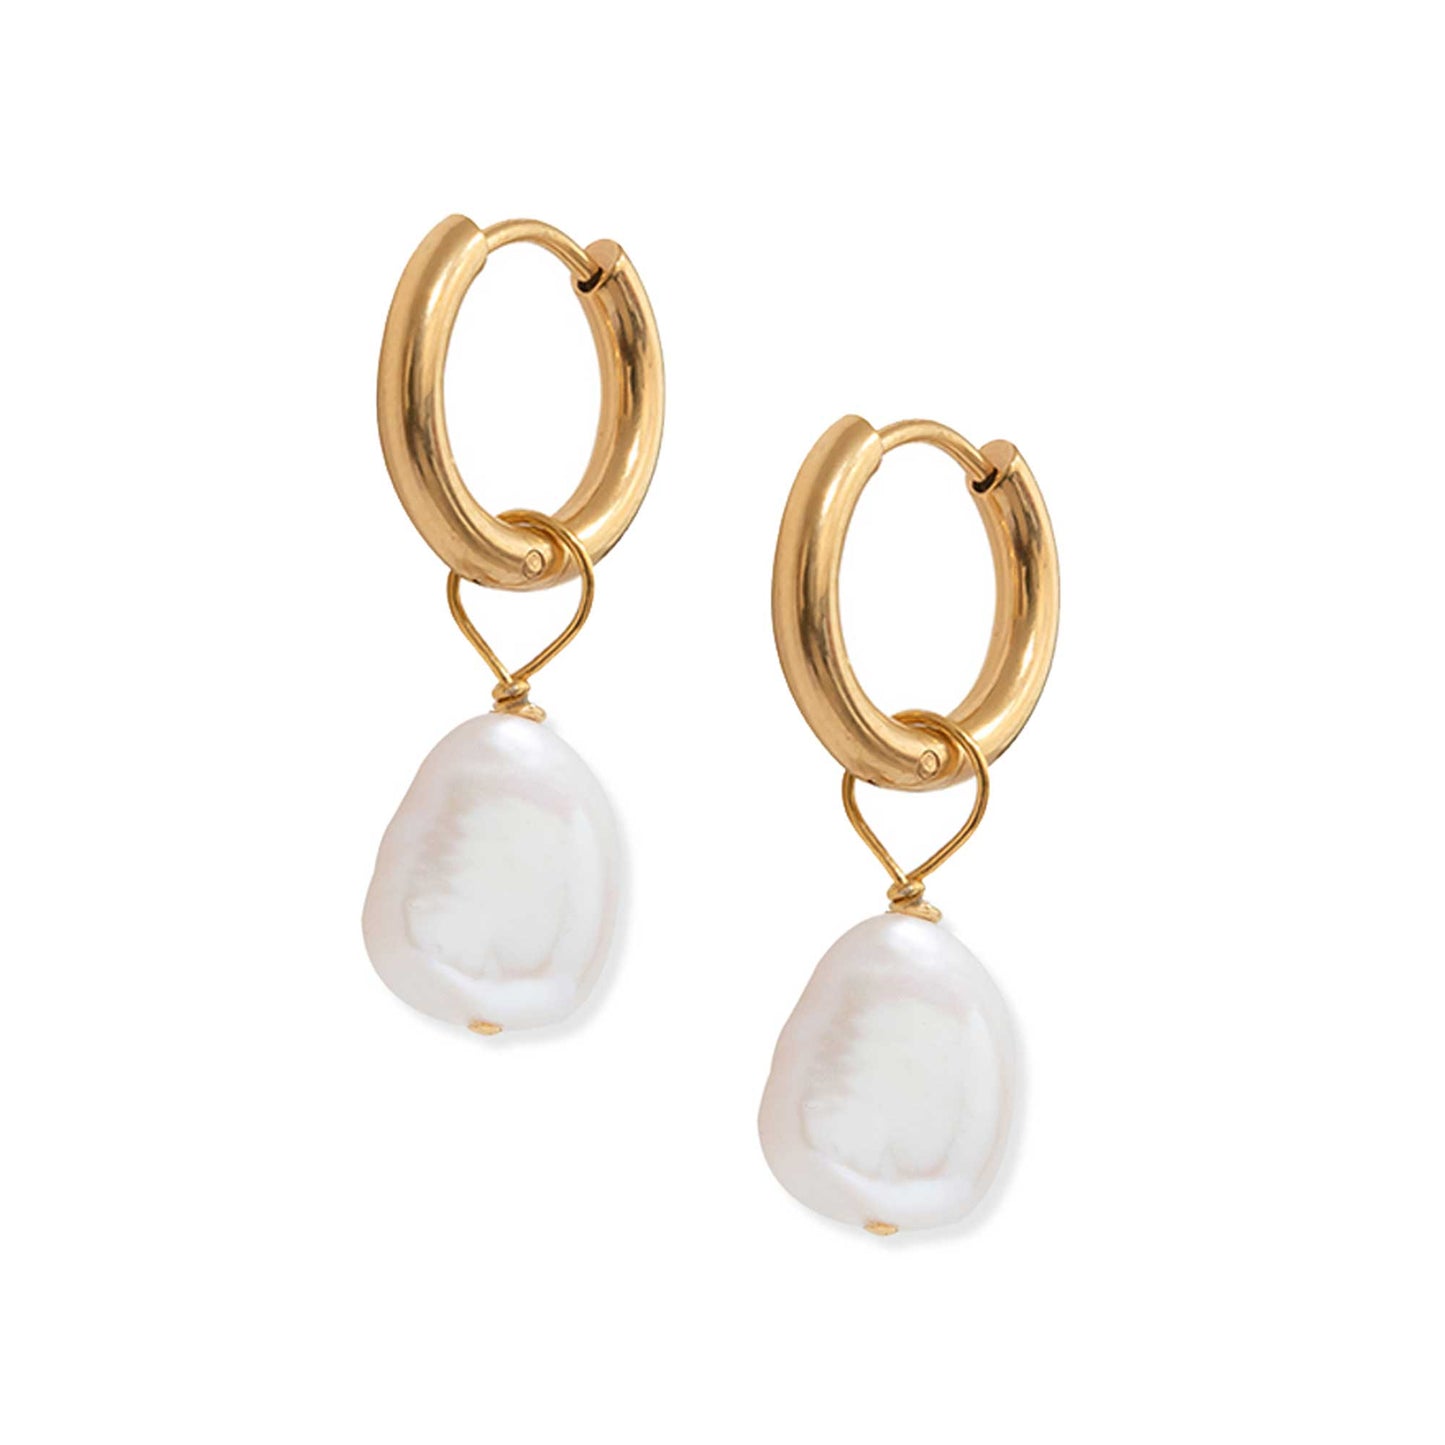 Pair of gold hoop earrings with pearl charm drop